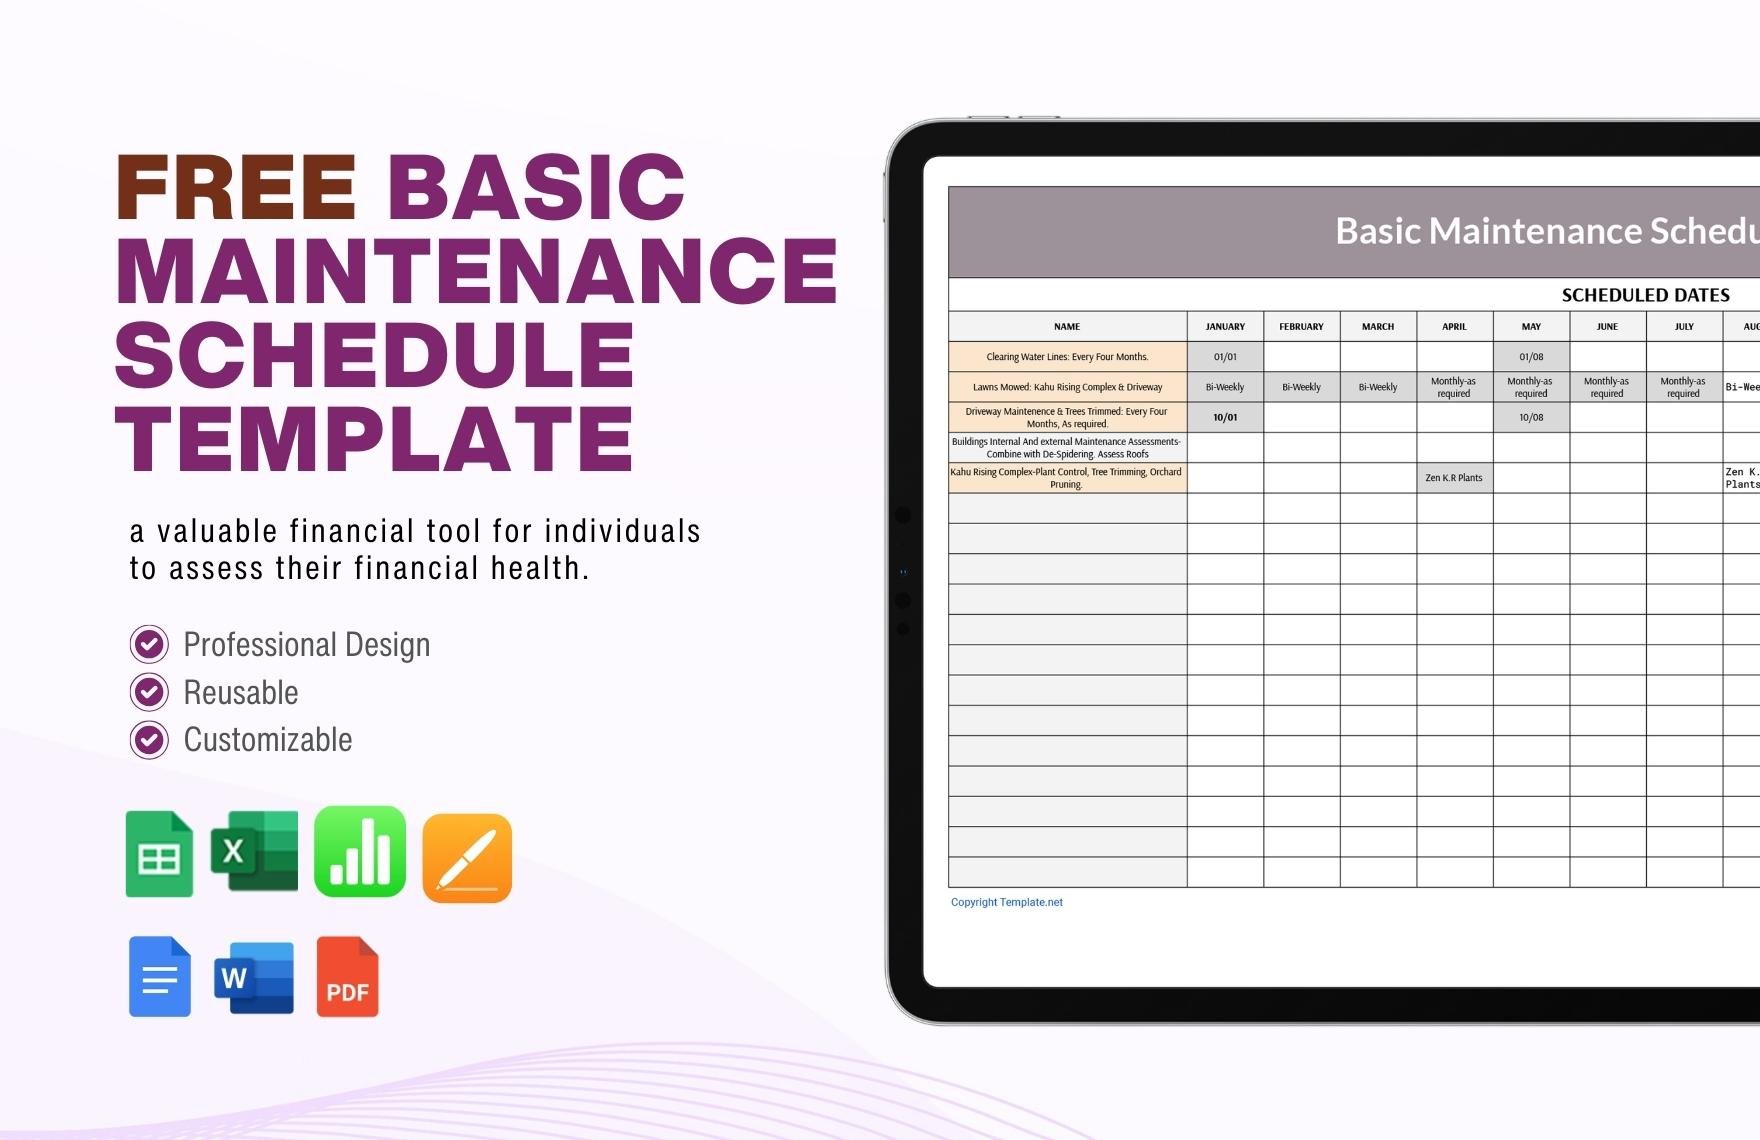 Maintenance Schedule Template in PDF